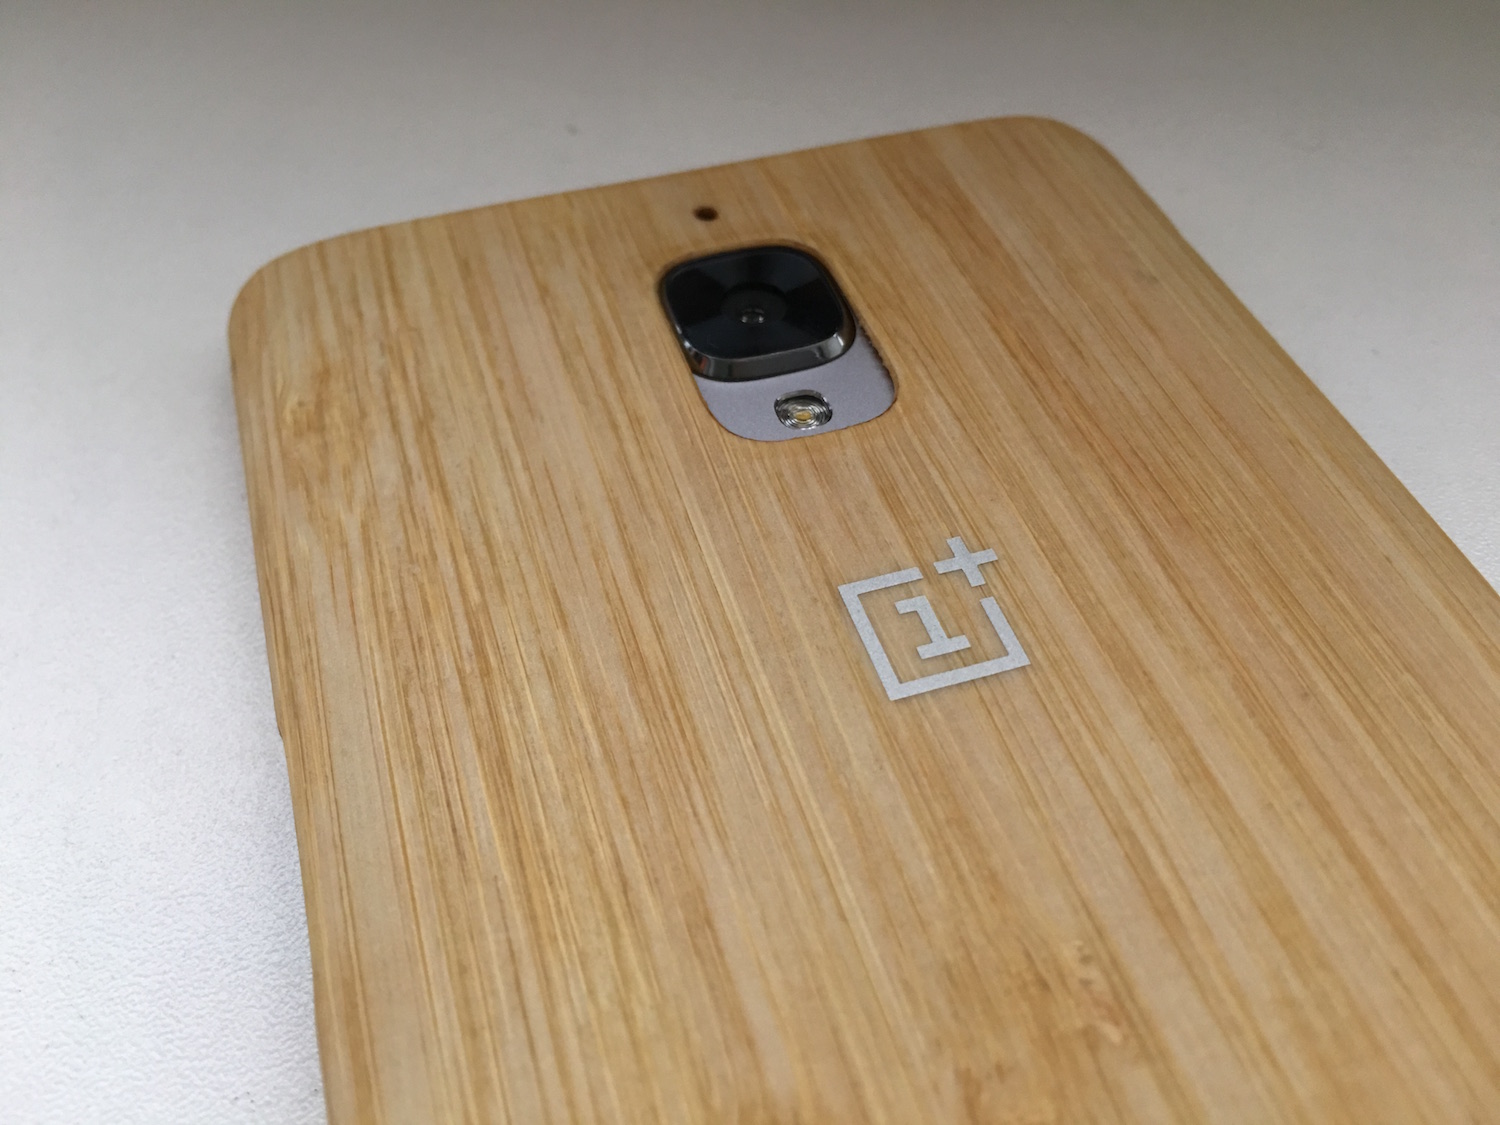 Carcasa de bambú del OnePlus 3